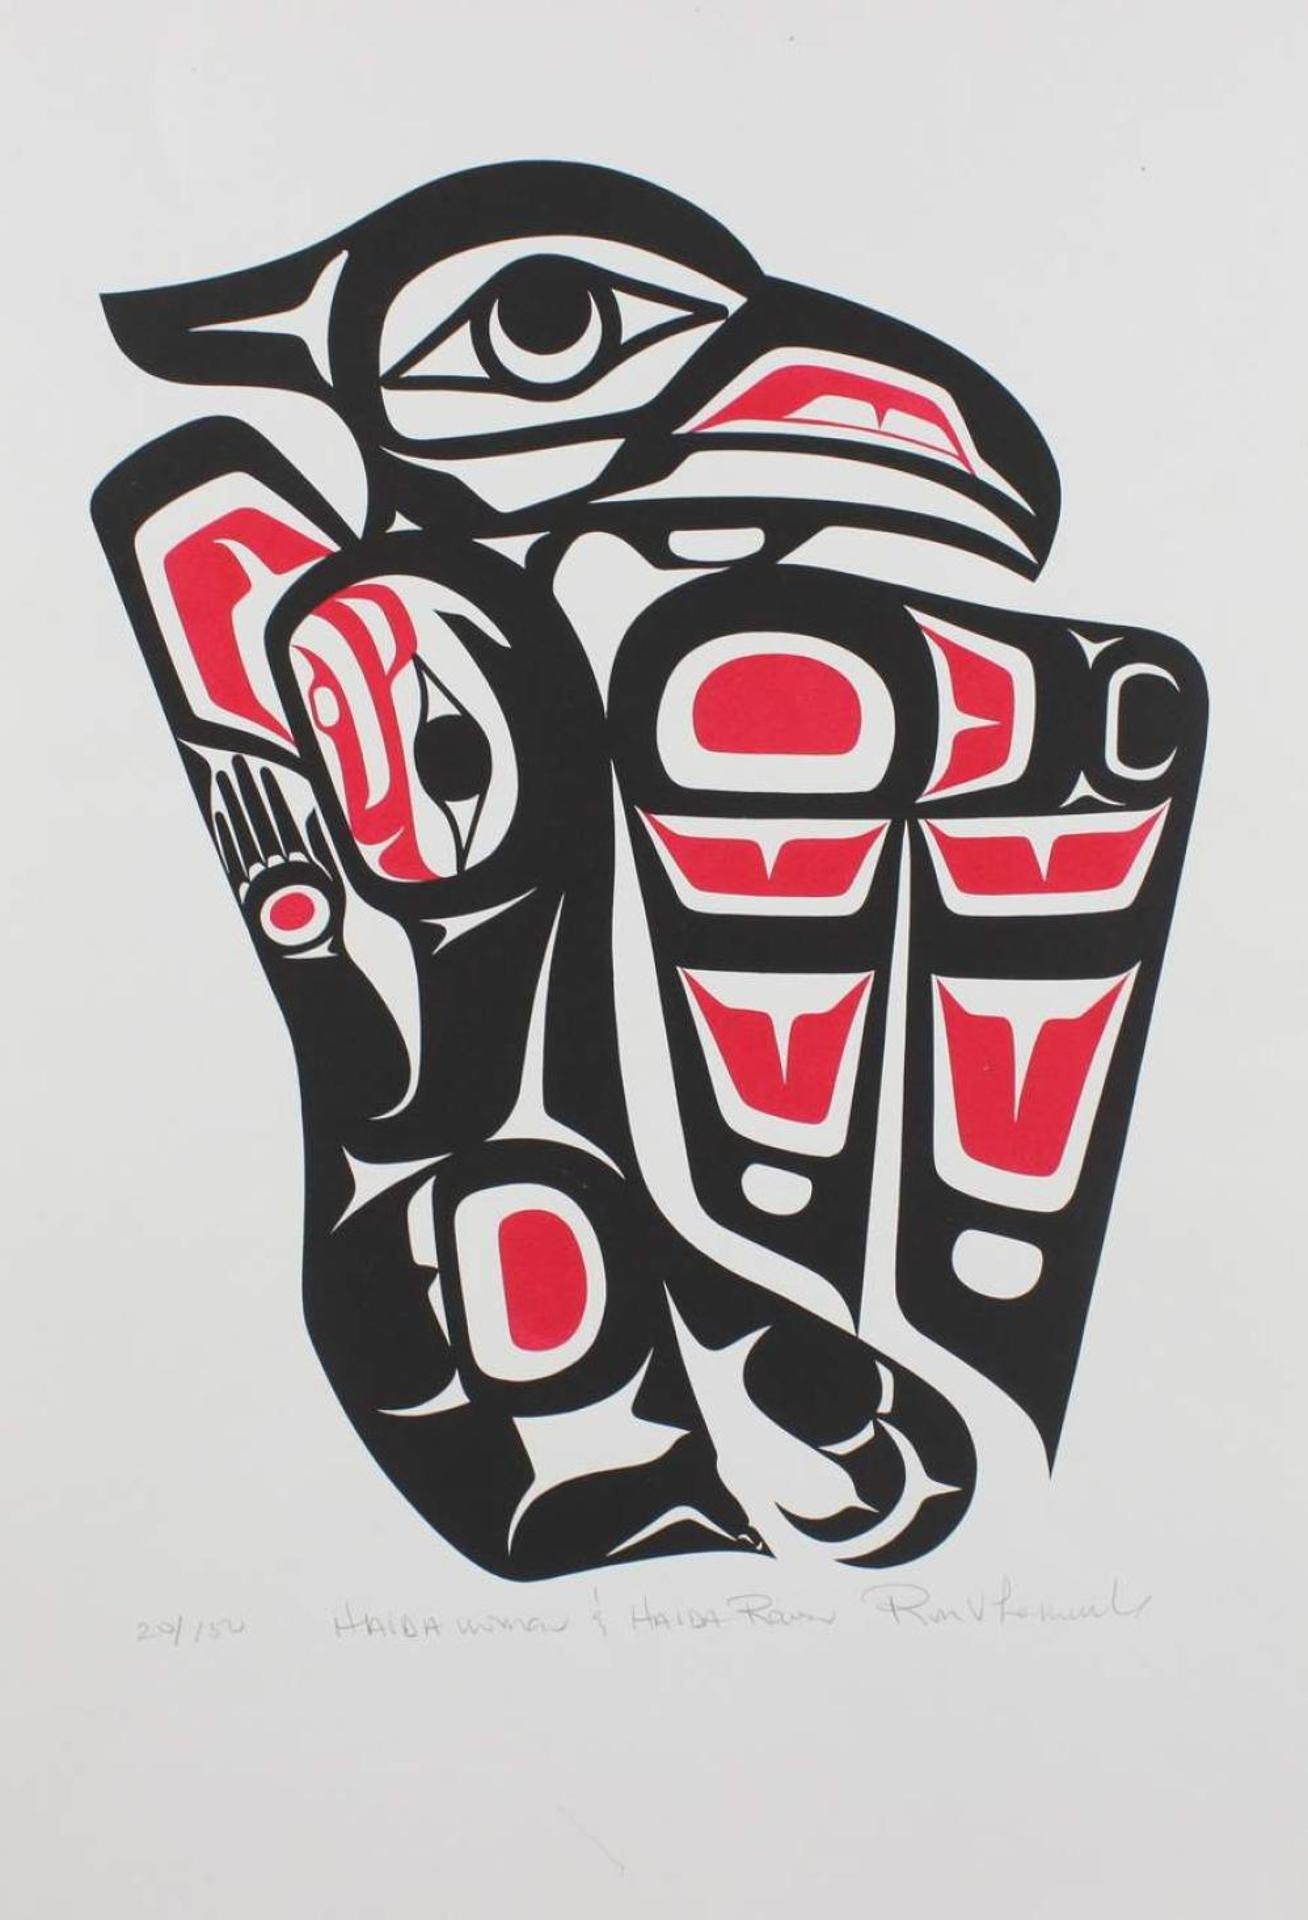 Ron V. Larochelle - Haida Woman and Haida Raven